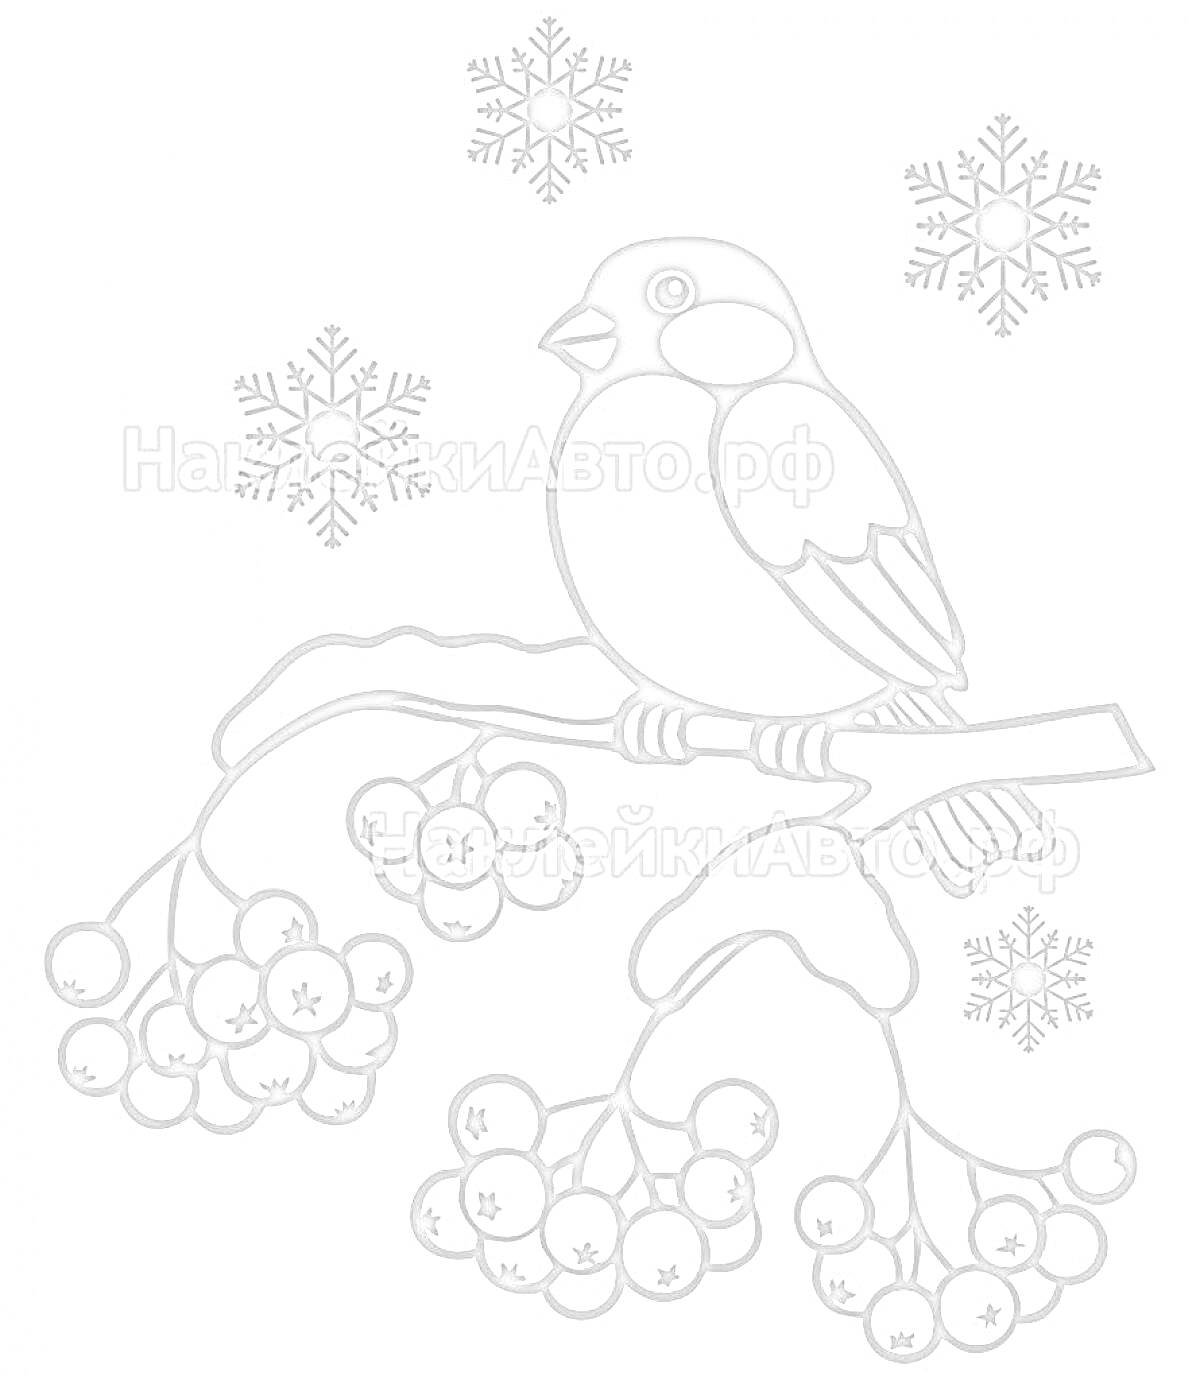 РаскраскаСнегирь на веточке с ягодами и снежинками